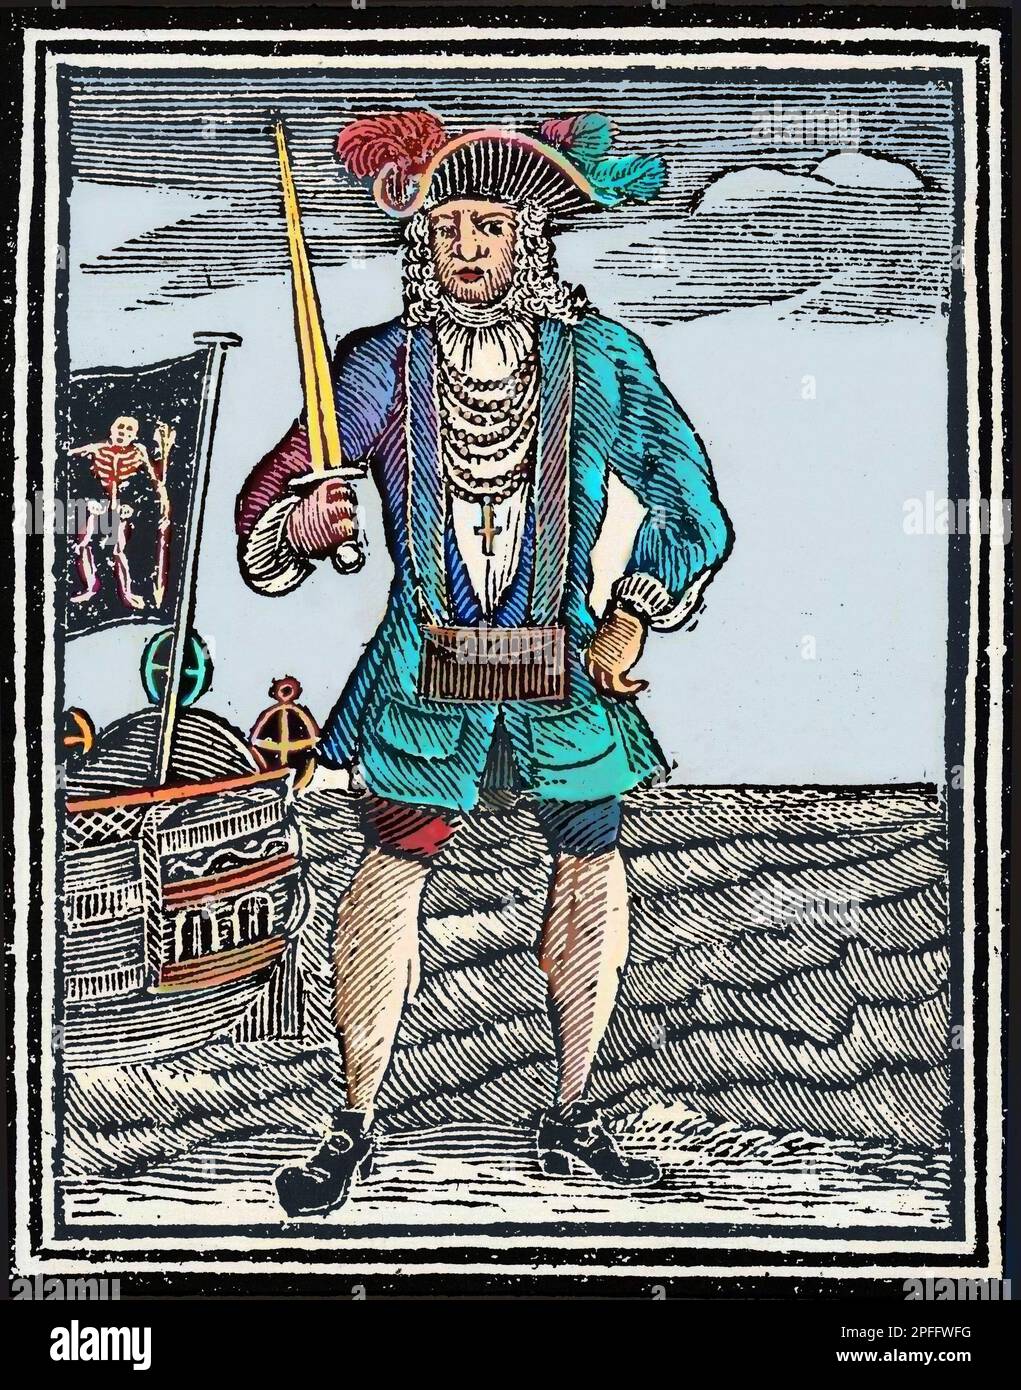 Bartholomew Roberts, de son vrai nom John Roberts, né le 17 mai 1682 et mort le 10 février 1722 , dit Black Bart (Bart le Noir), est un pirate britannique - Portrait du pirate Bartholomew 'Black Bart' Roberts. Gravure de graviers de 'Une histoire générale des Pyrates' (1724) Banque D'Images